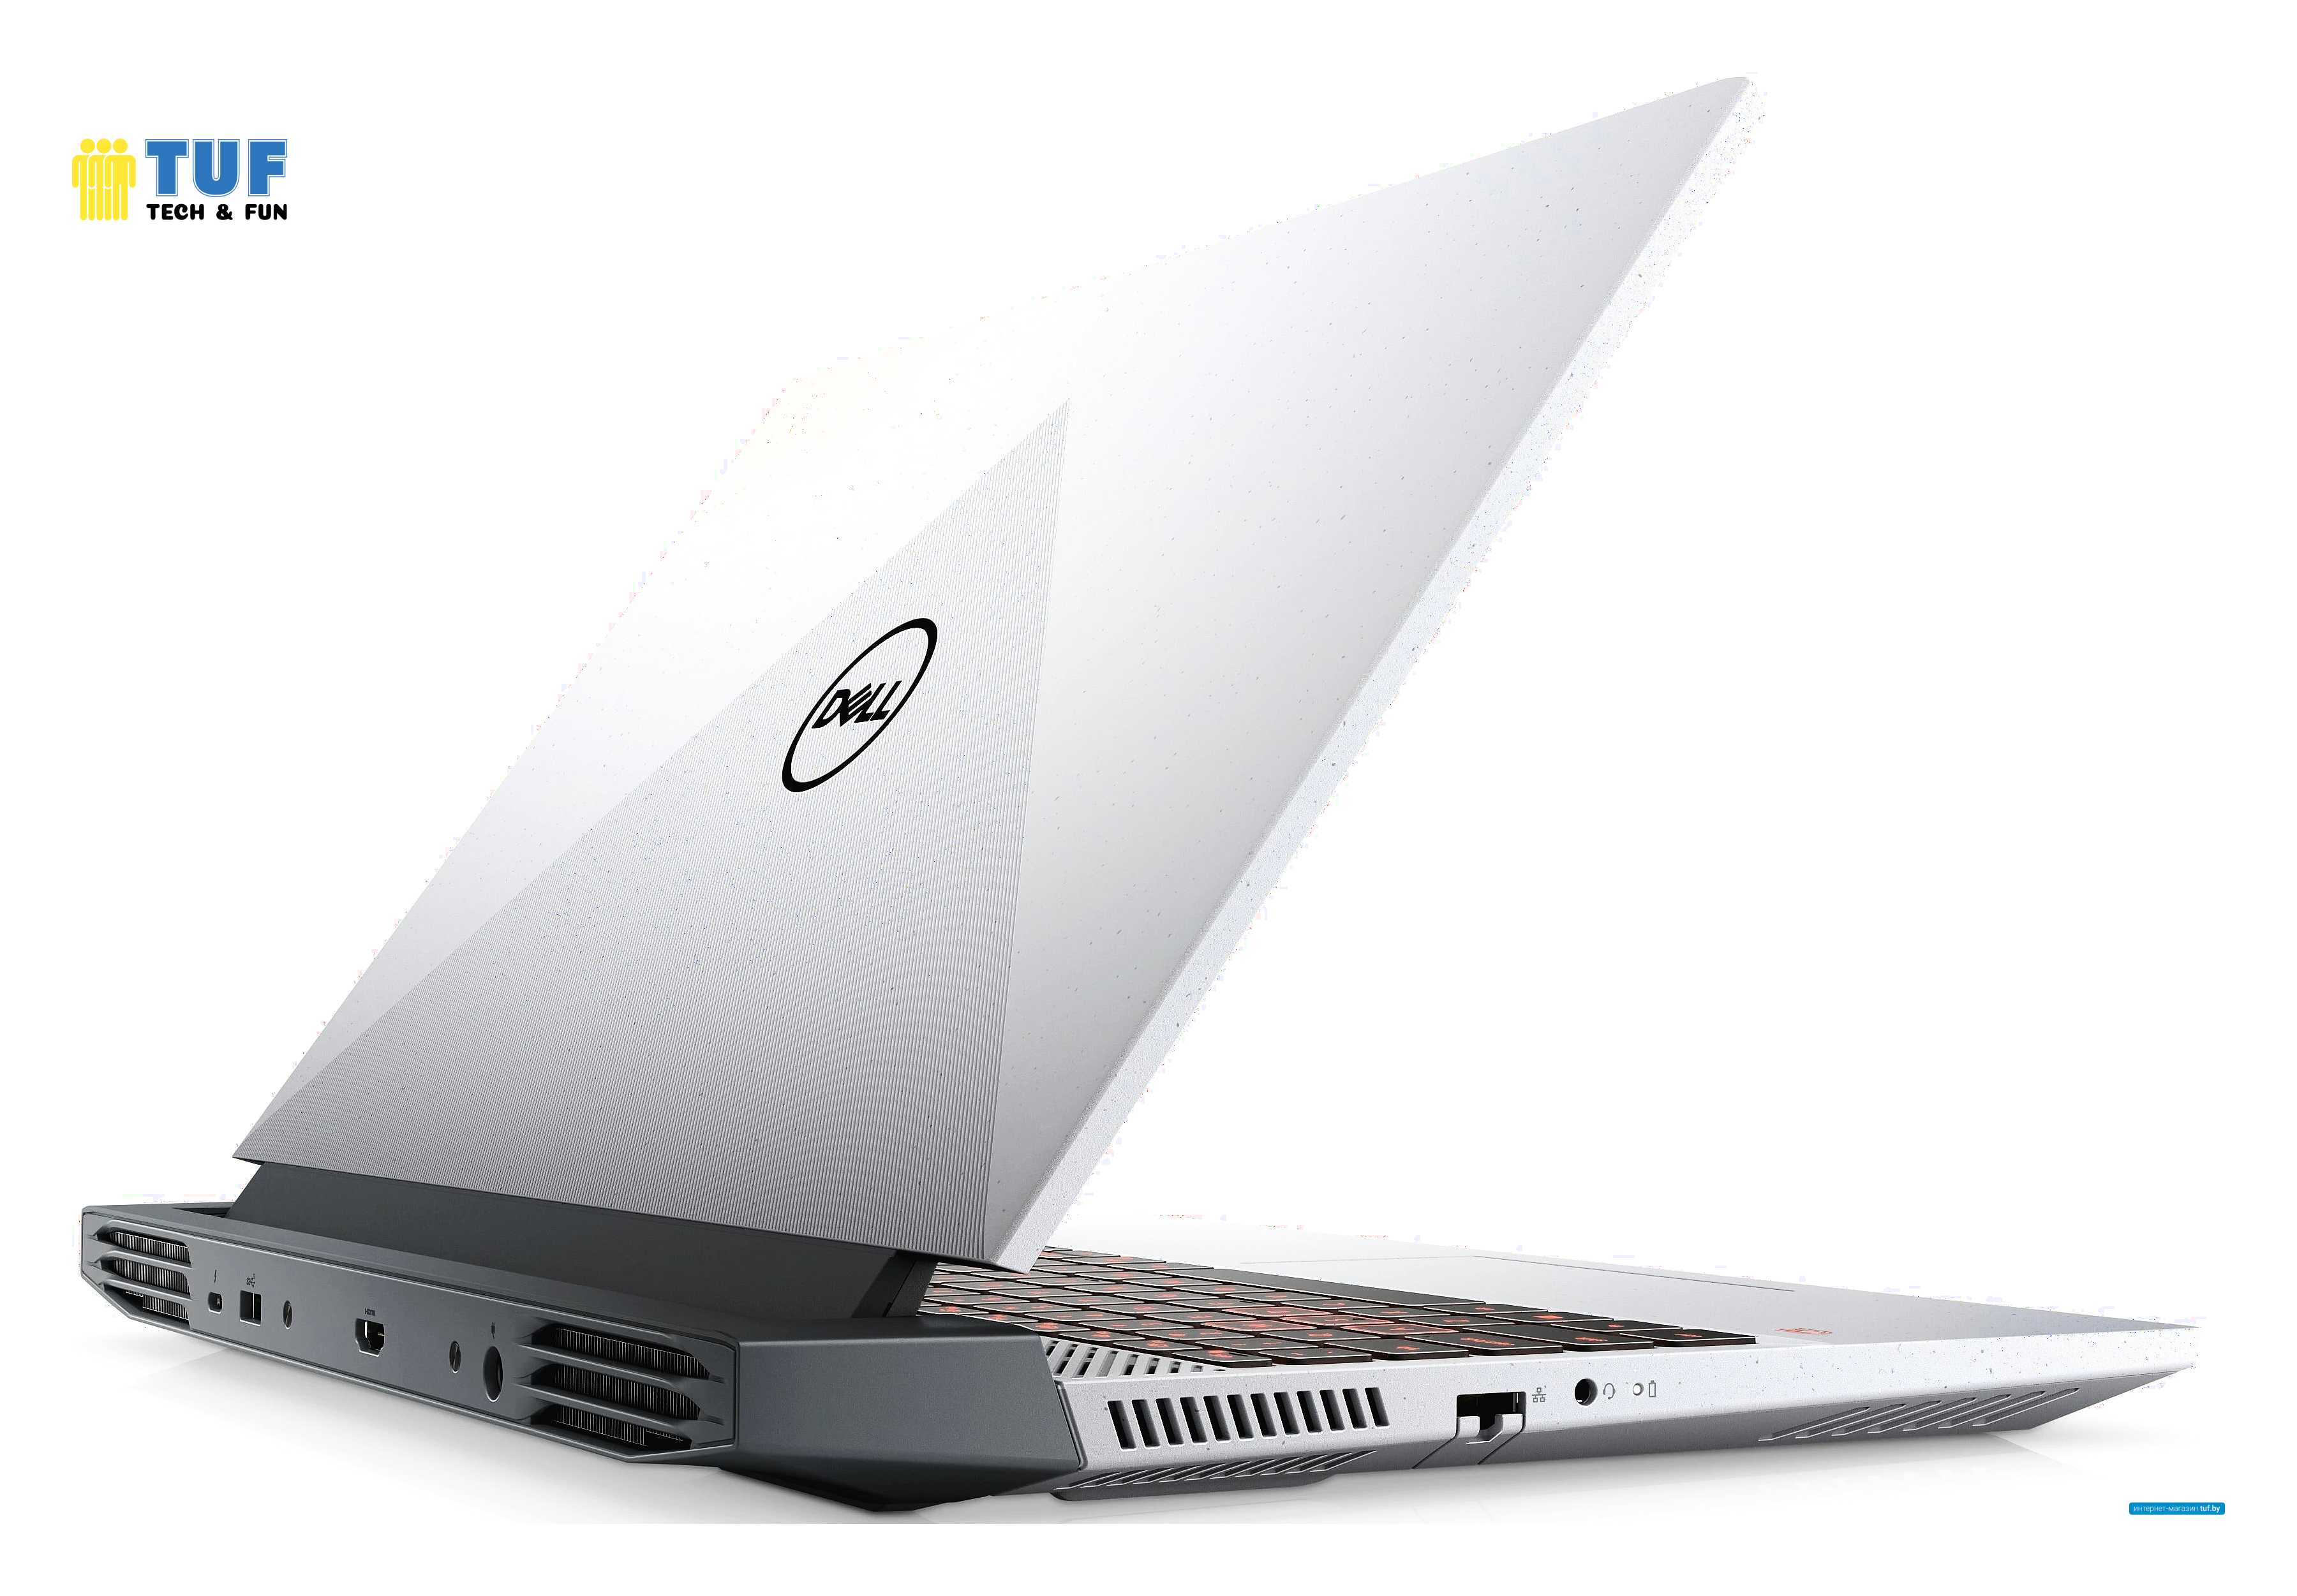 Игровой ноутбук Dell G15 5515 Ryzen Edition G15RE-A975GRY-PUS